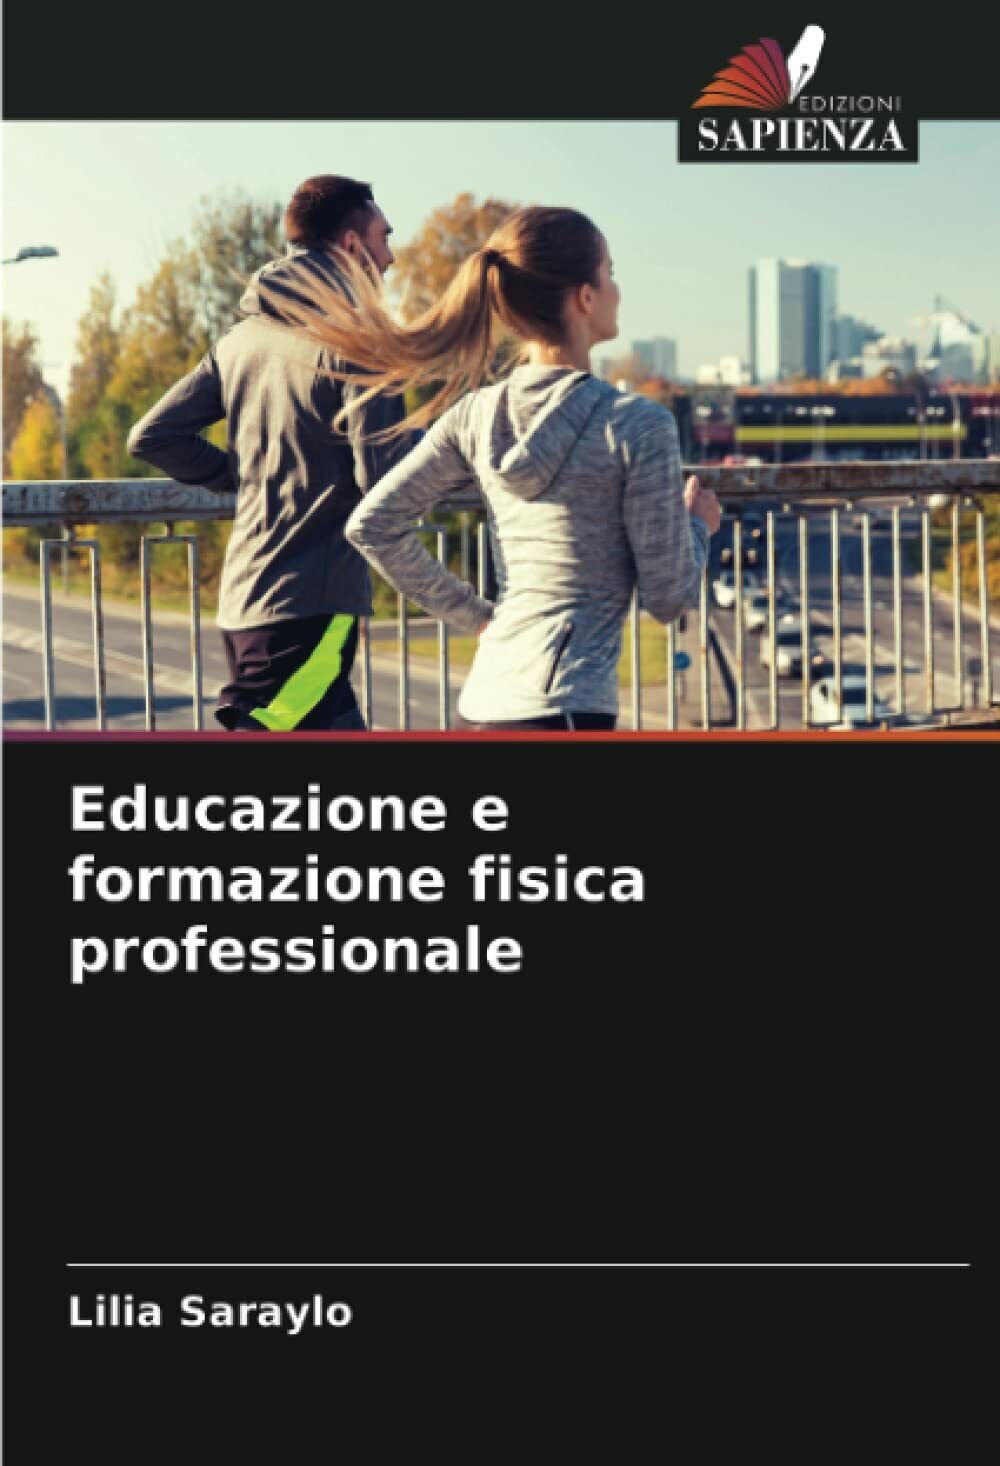 Educazione e formazione fisica professionale - Lilia Saraylo - Sapienza, 2021 libro usato